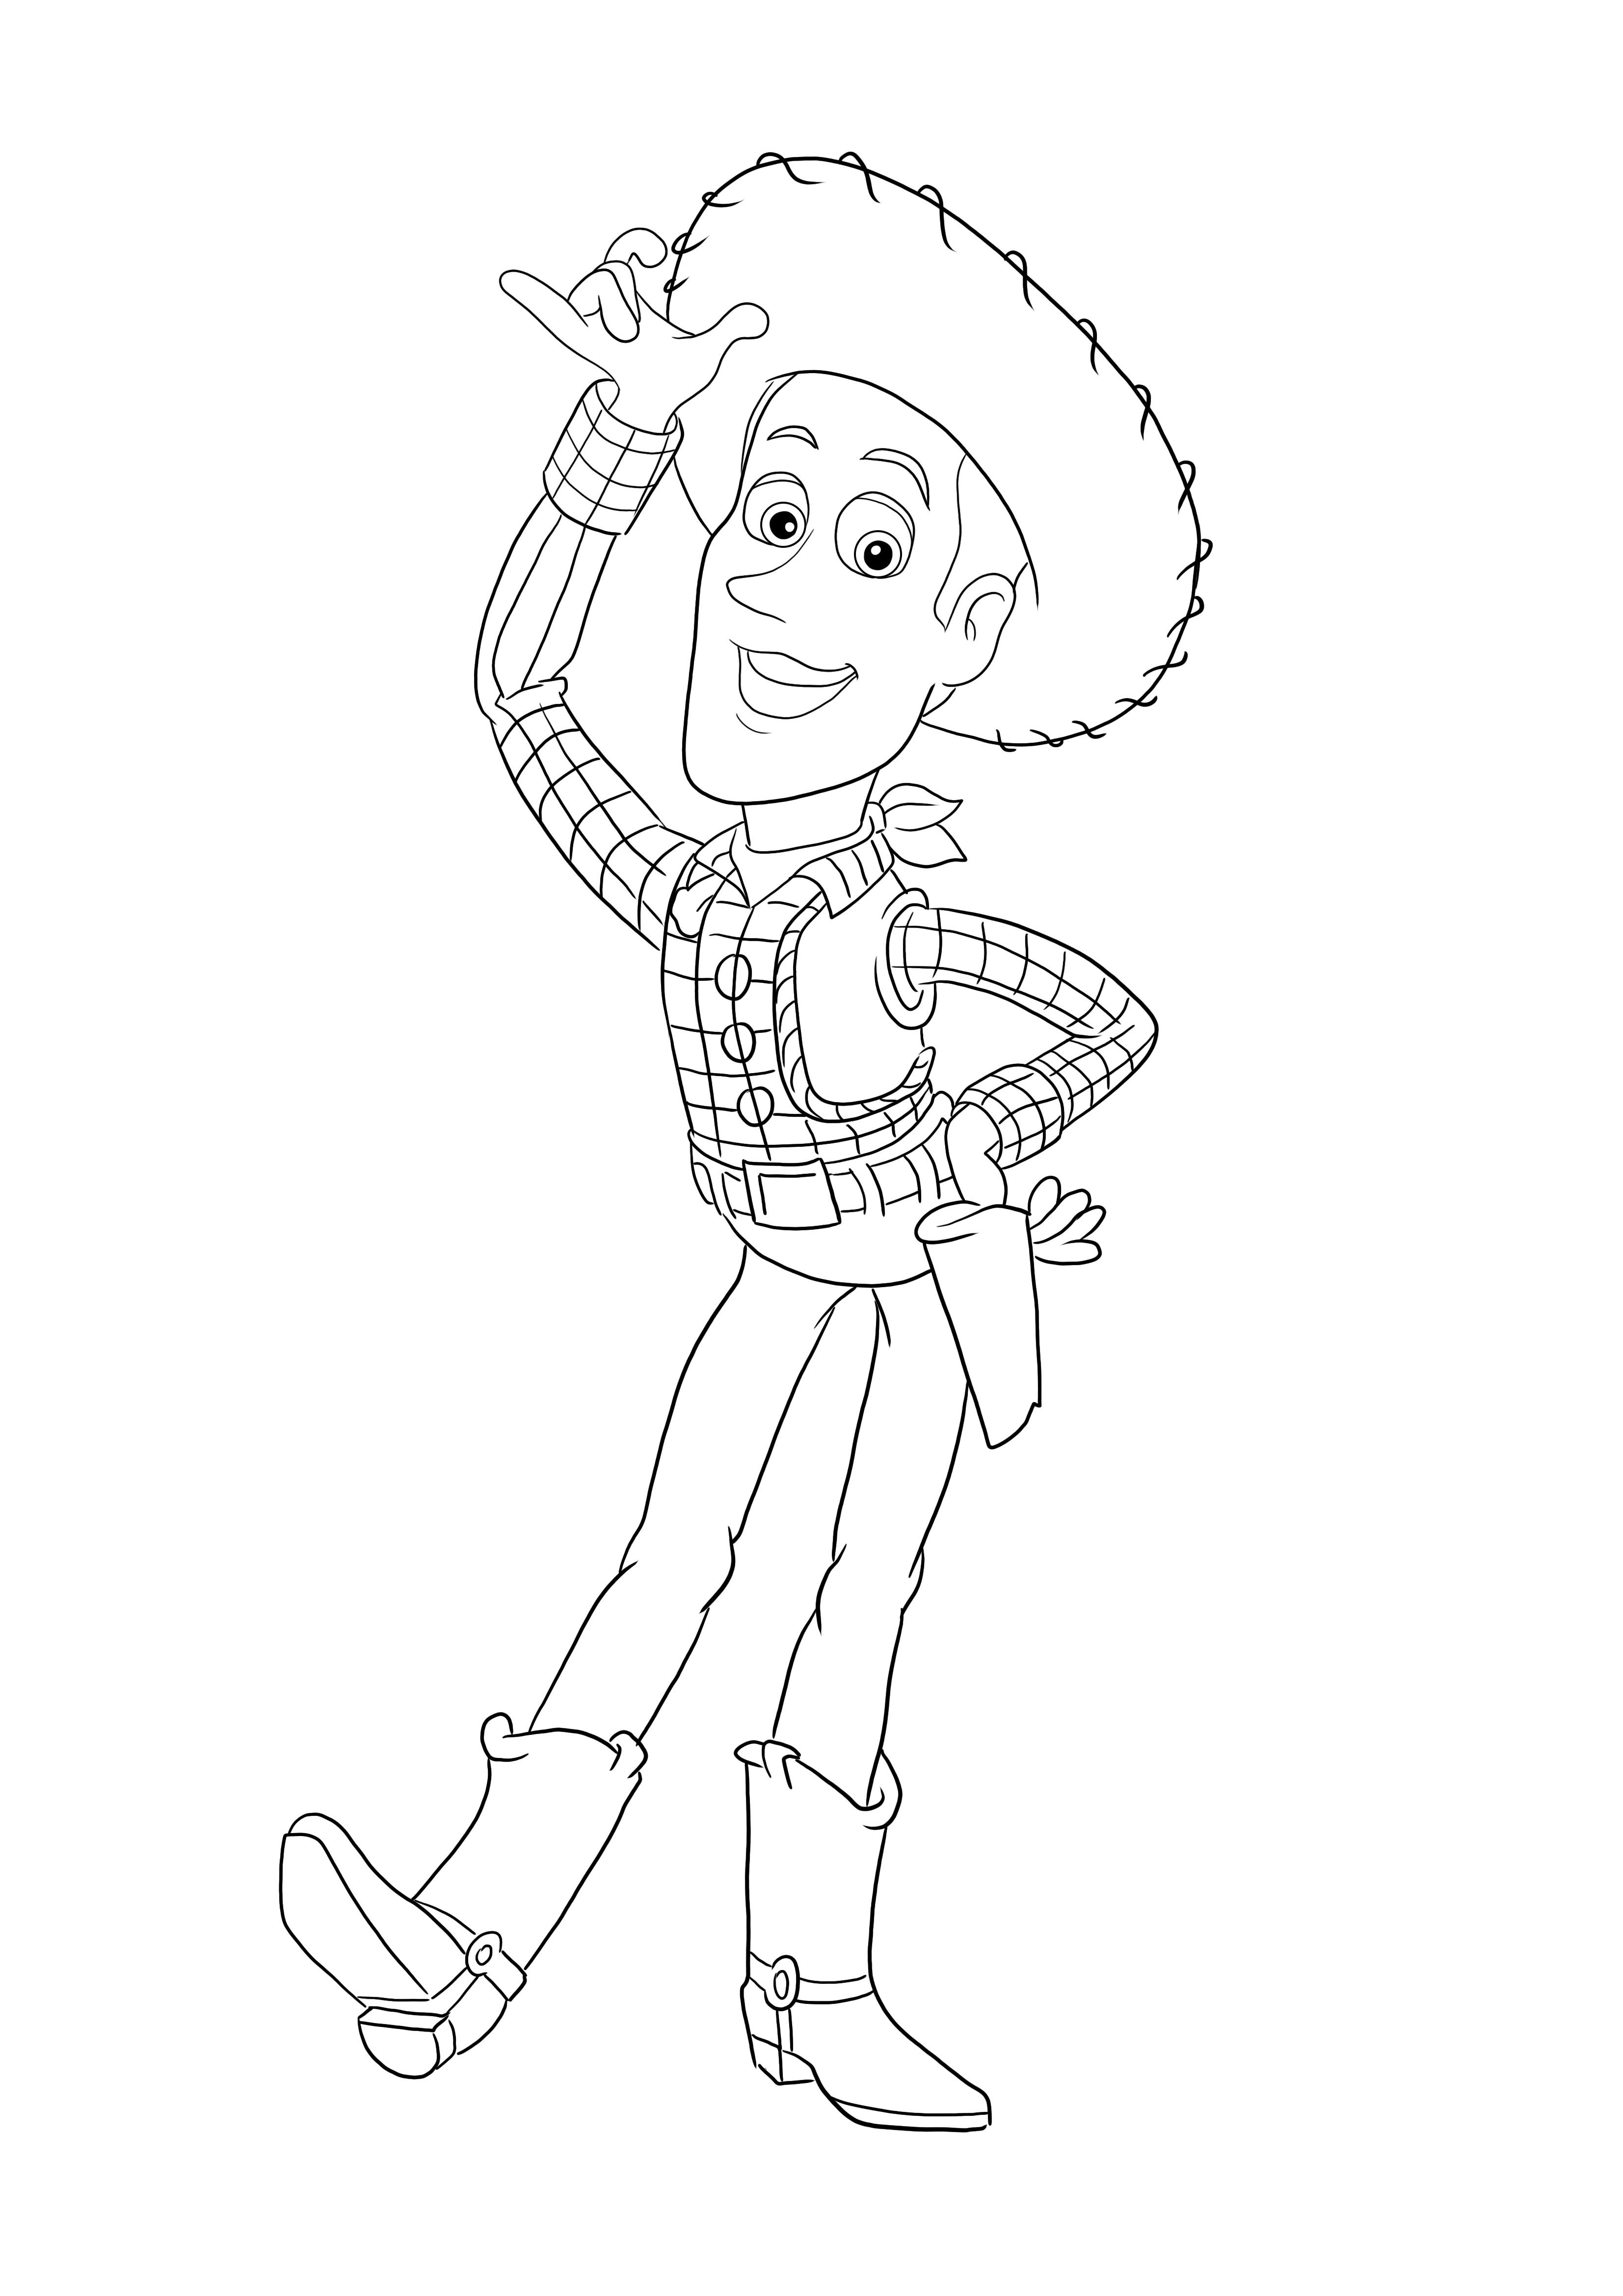 Kolorowanki Woody'ego z Toy Story można bezpłatnie wydrukować lub pobrać dla wszystkich grup wiekowych